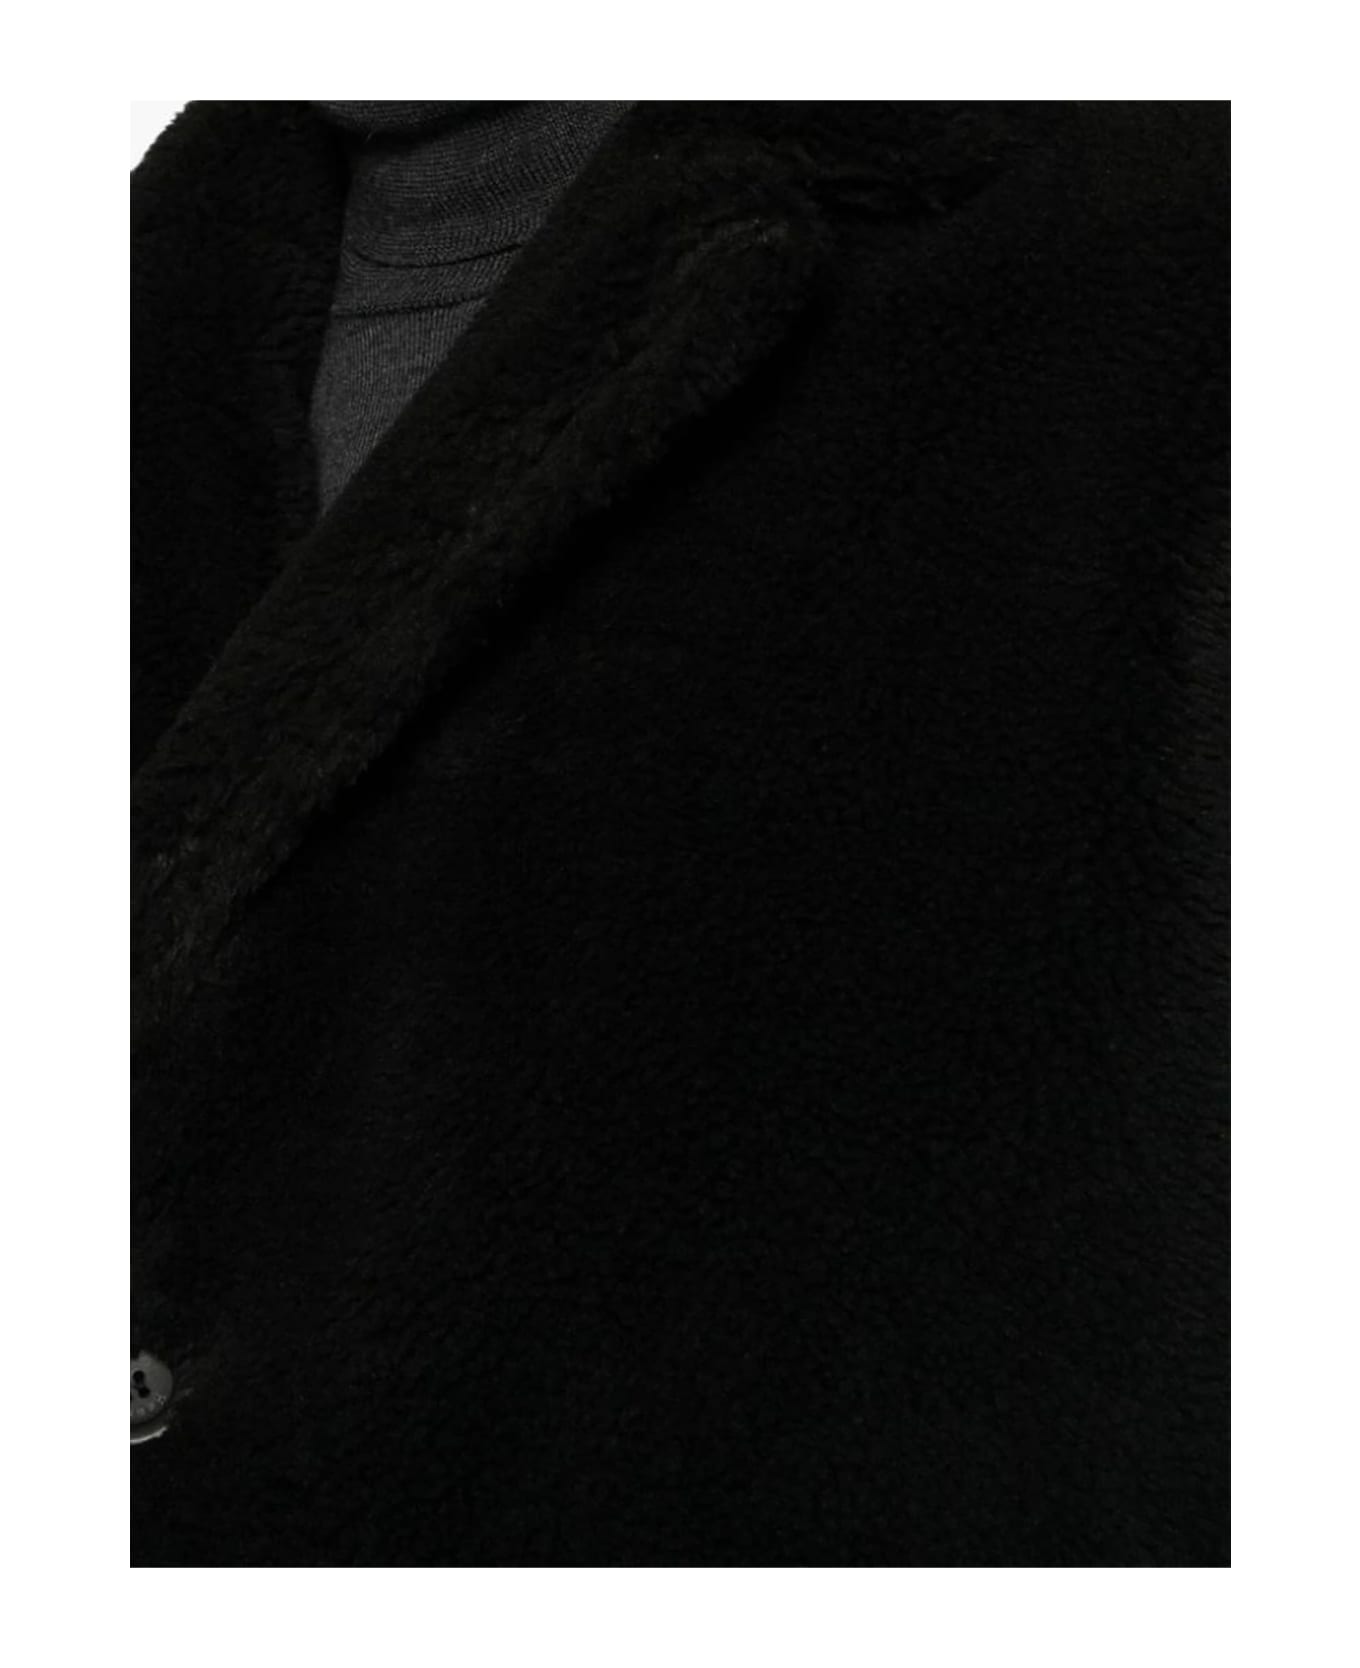 Herno Vegan Fur Coat - black コート